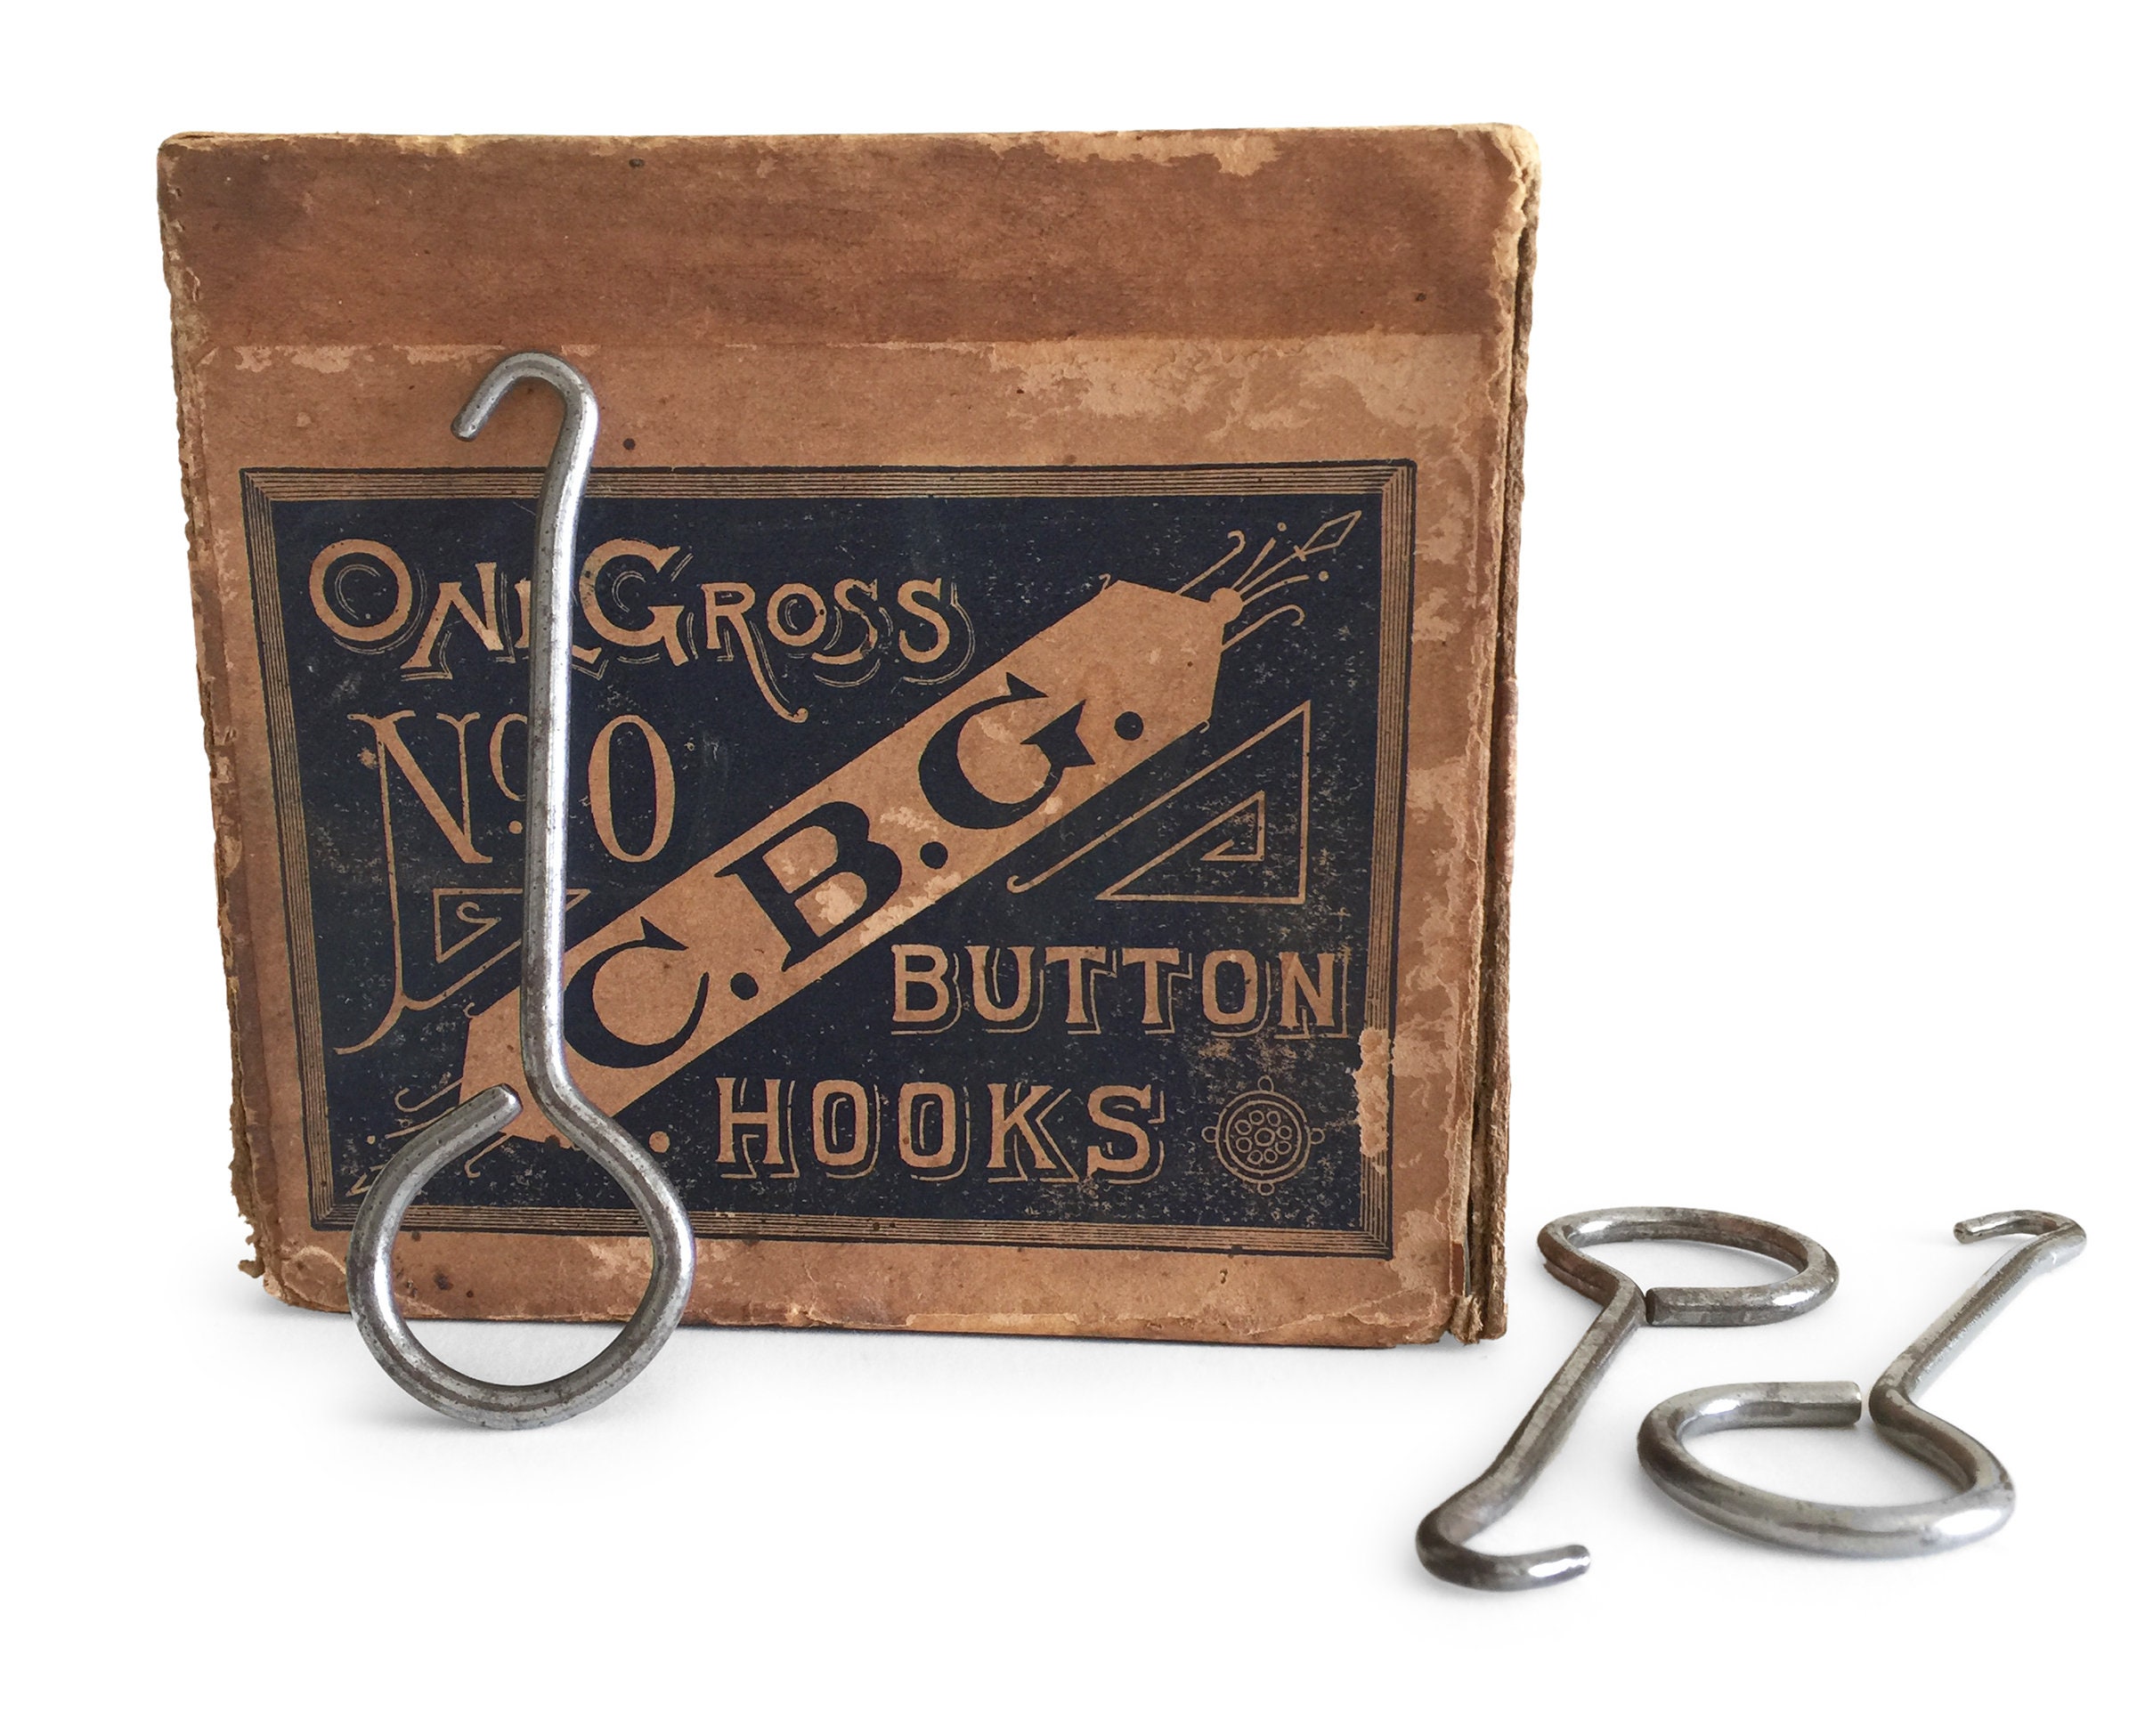 2 Mint Condition Button Hooks 1-1886 Regal Shoe Button Hook $3.50 1- 8  Generic